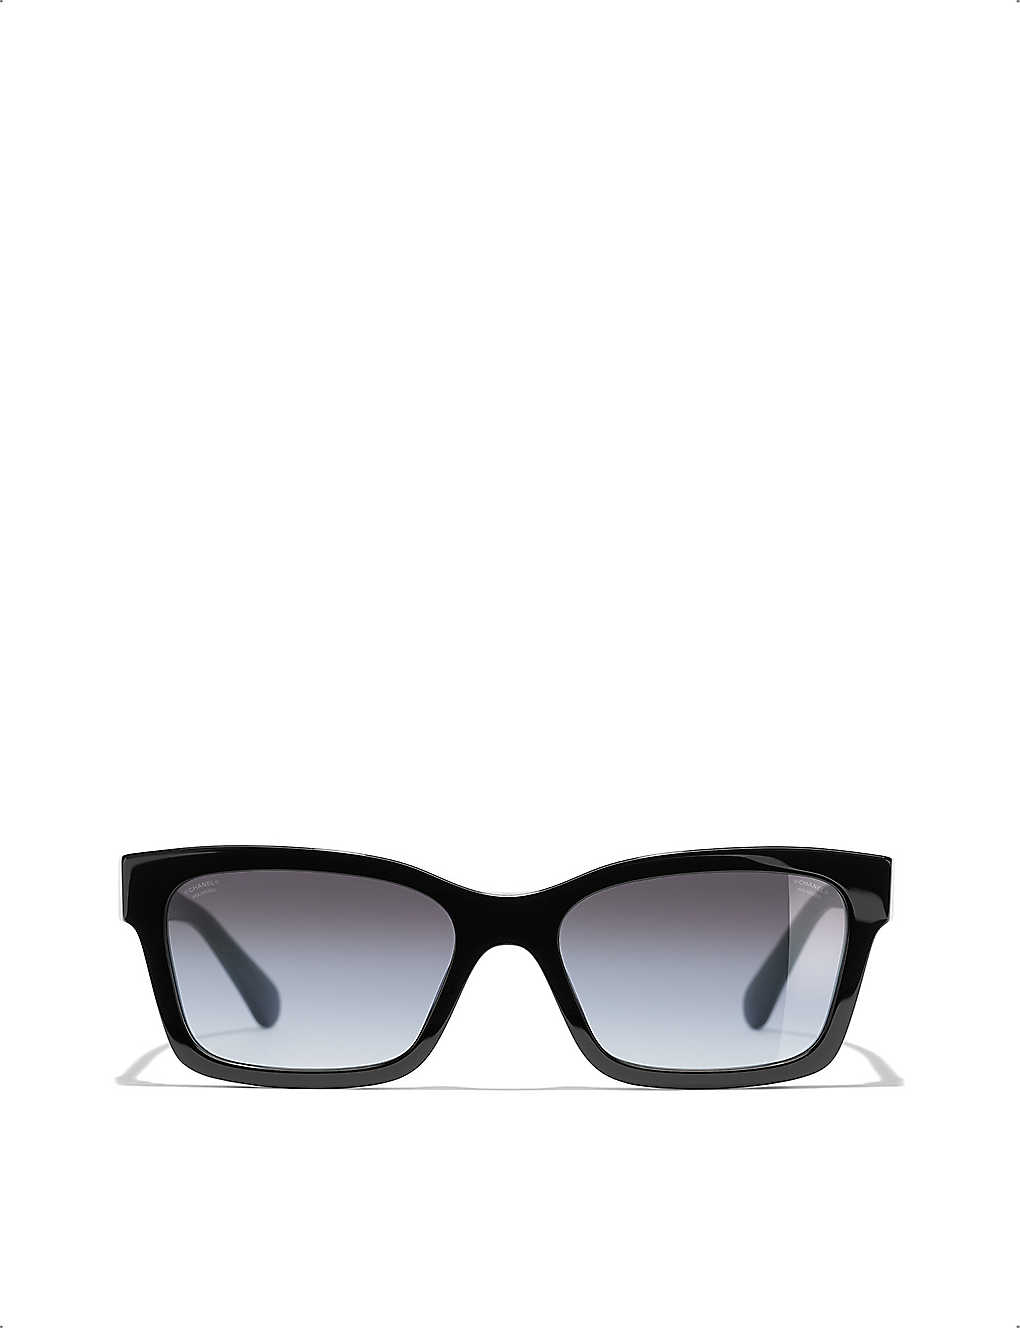 Chanel 5417 c.534/3 Square Sunglasses Black/Beige